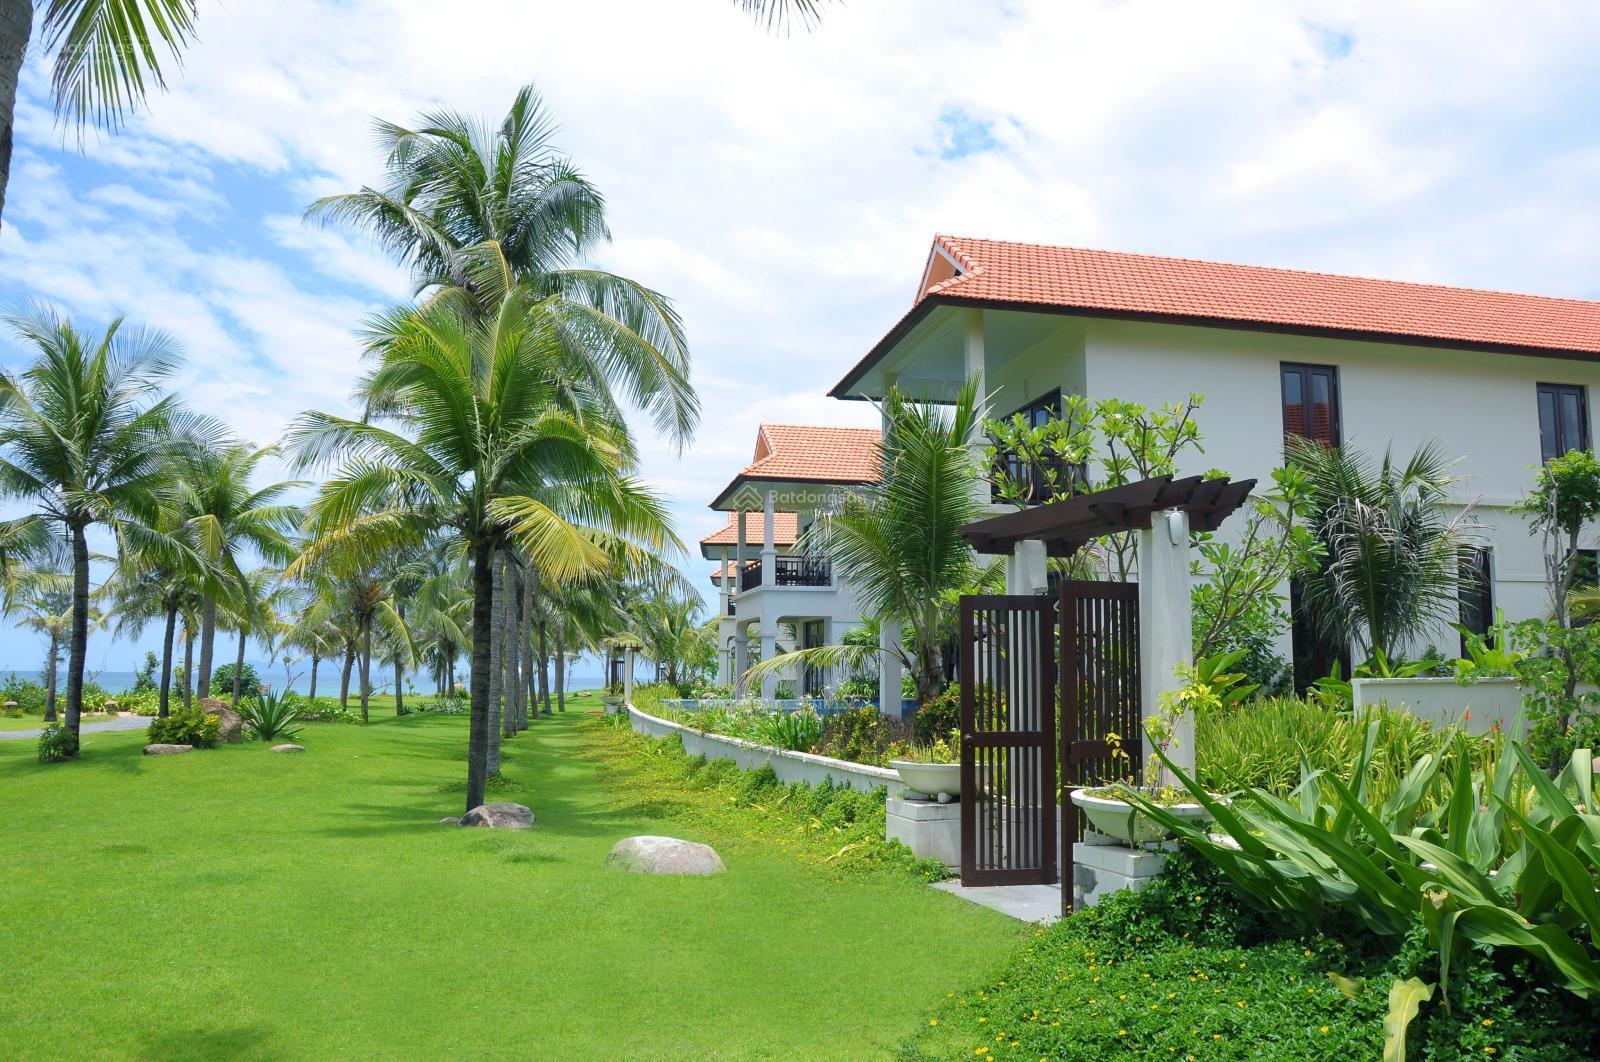 Furama villa for sale, 3 bedrooms, sea view.